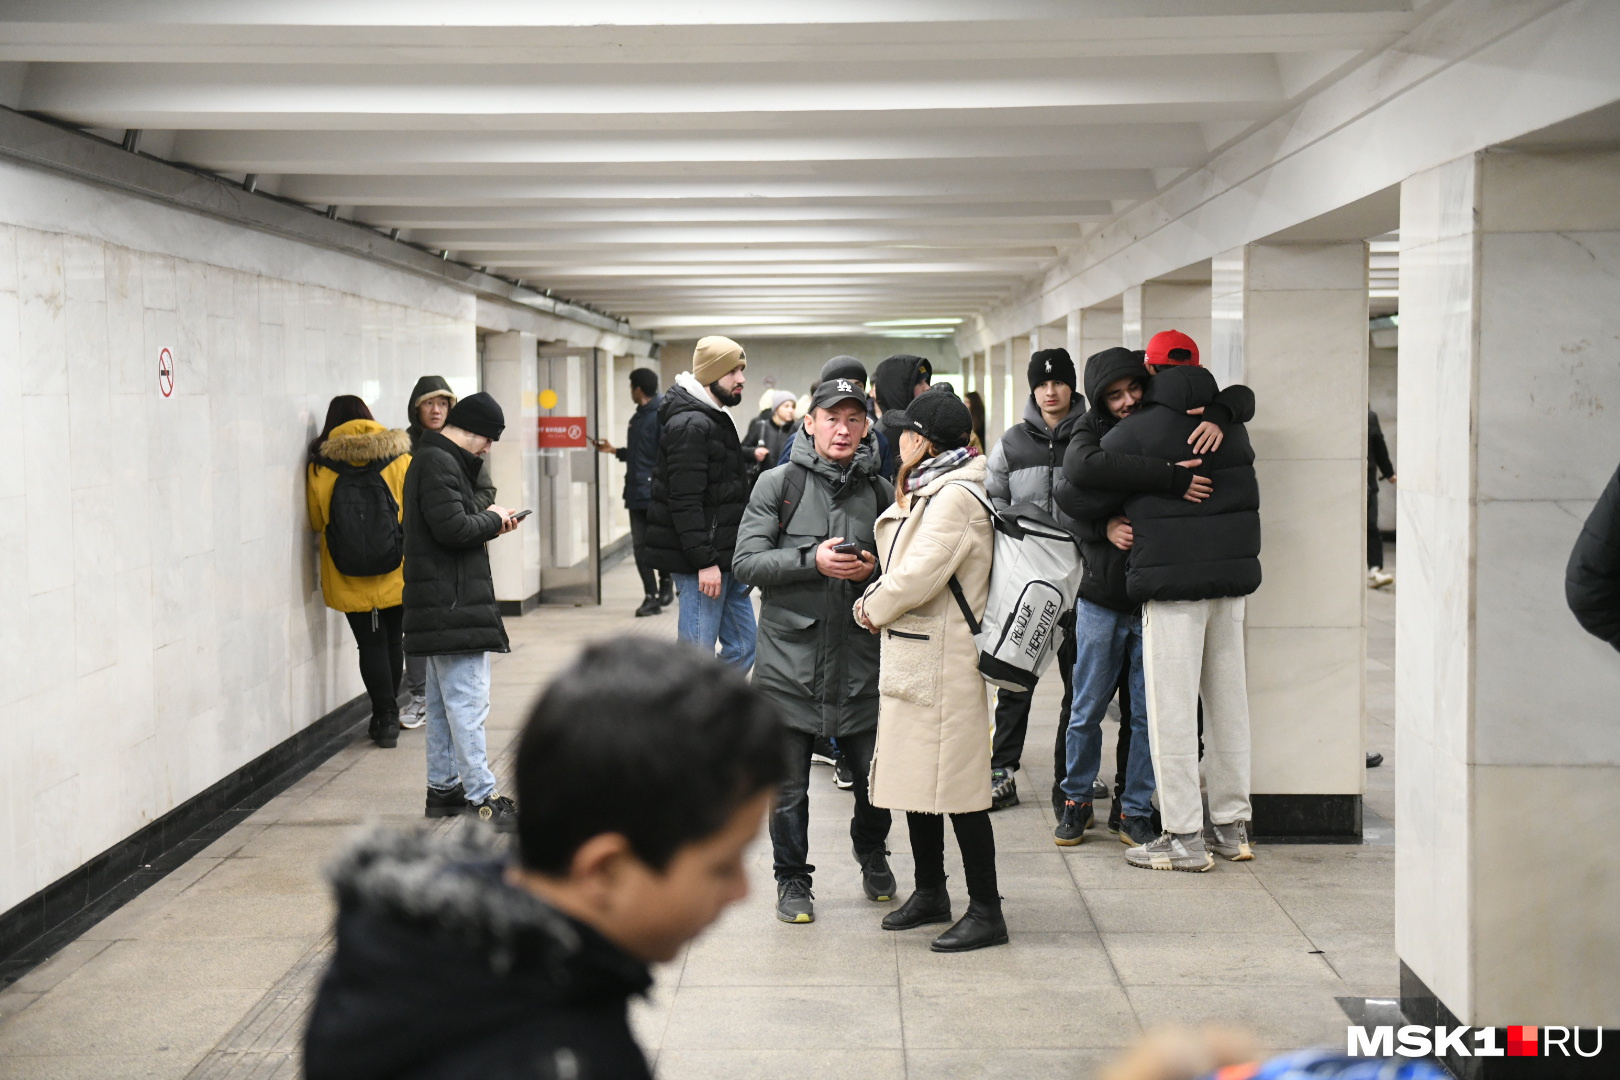 По выходе из метро людей предупреждали, что Красная площадь закрыта. Растерянному народу приходилось решать, куда можно сходить после таких новостей